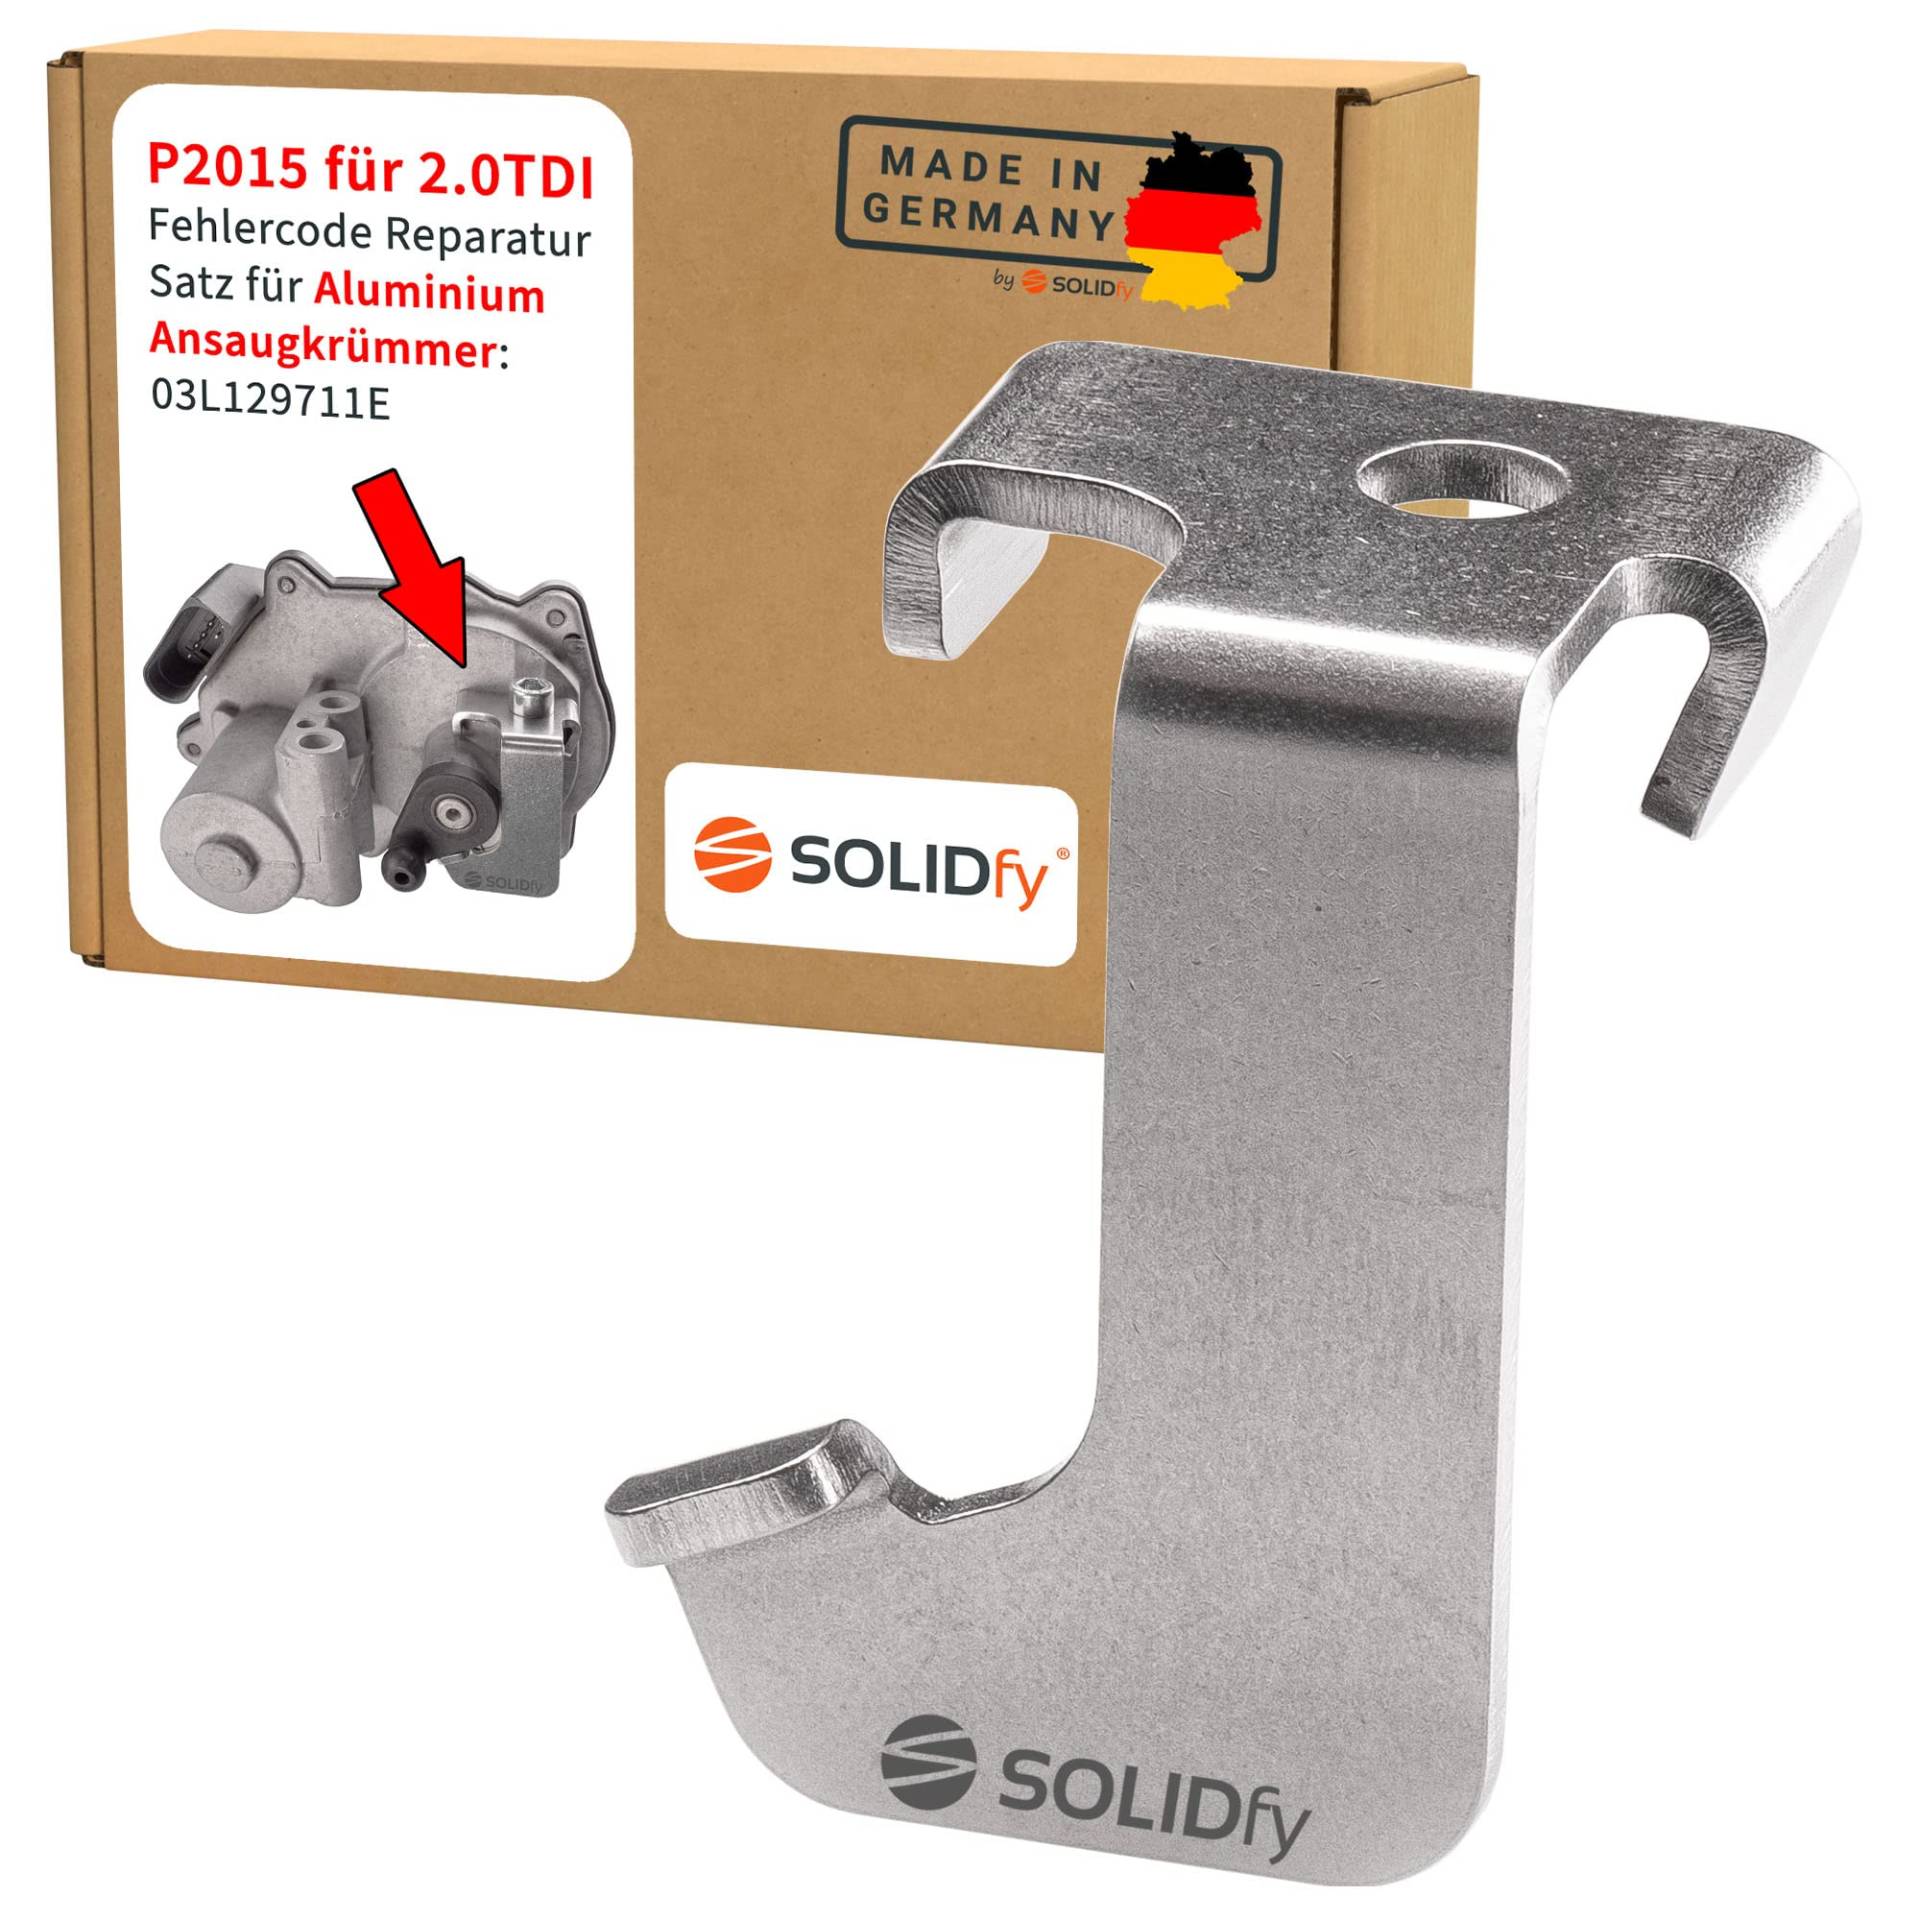 SOLIDfy® - P2015 Fehlercode Reparatursatz für 2.0 TDI mit Aluminium Ansaugkrümmer 03L129711E und Drosselklappensteller 03L129086 von SOLIDfy